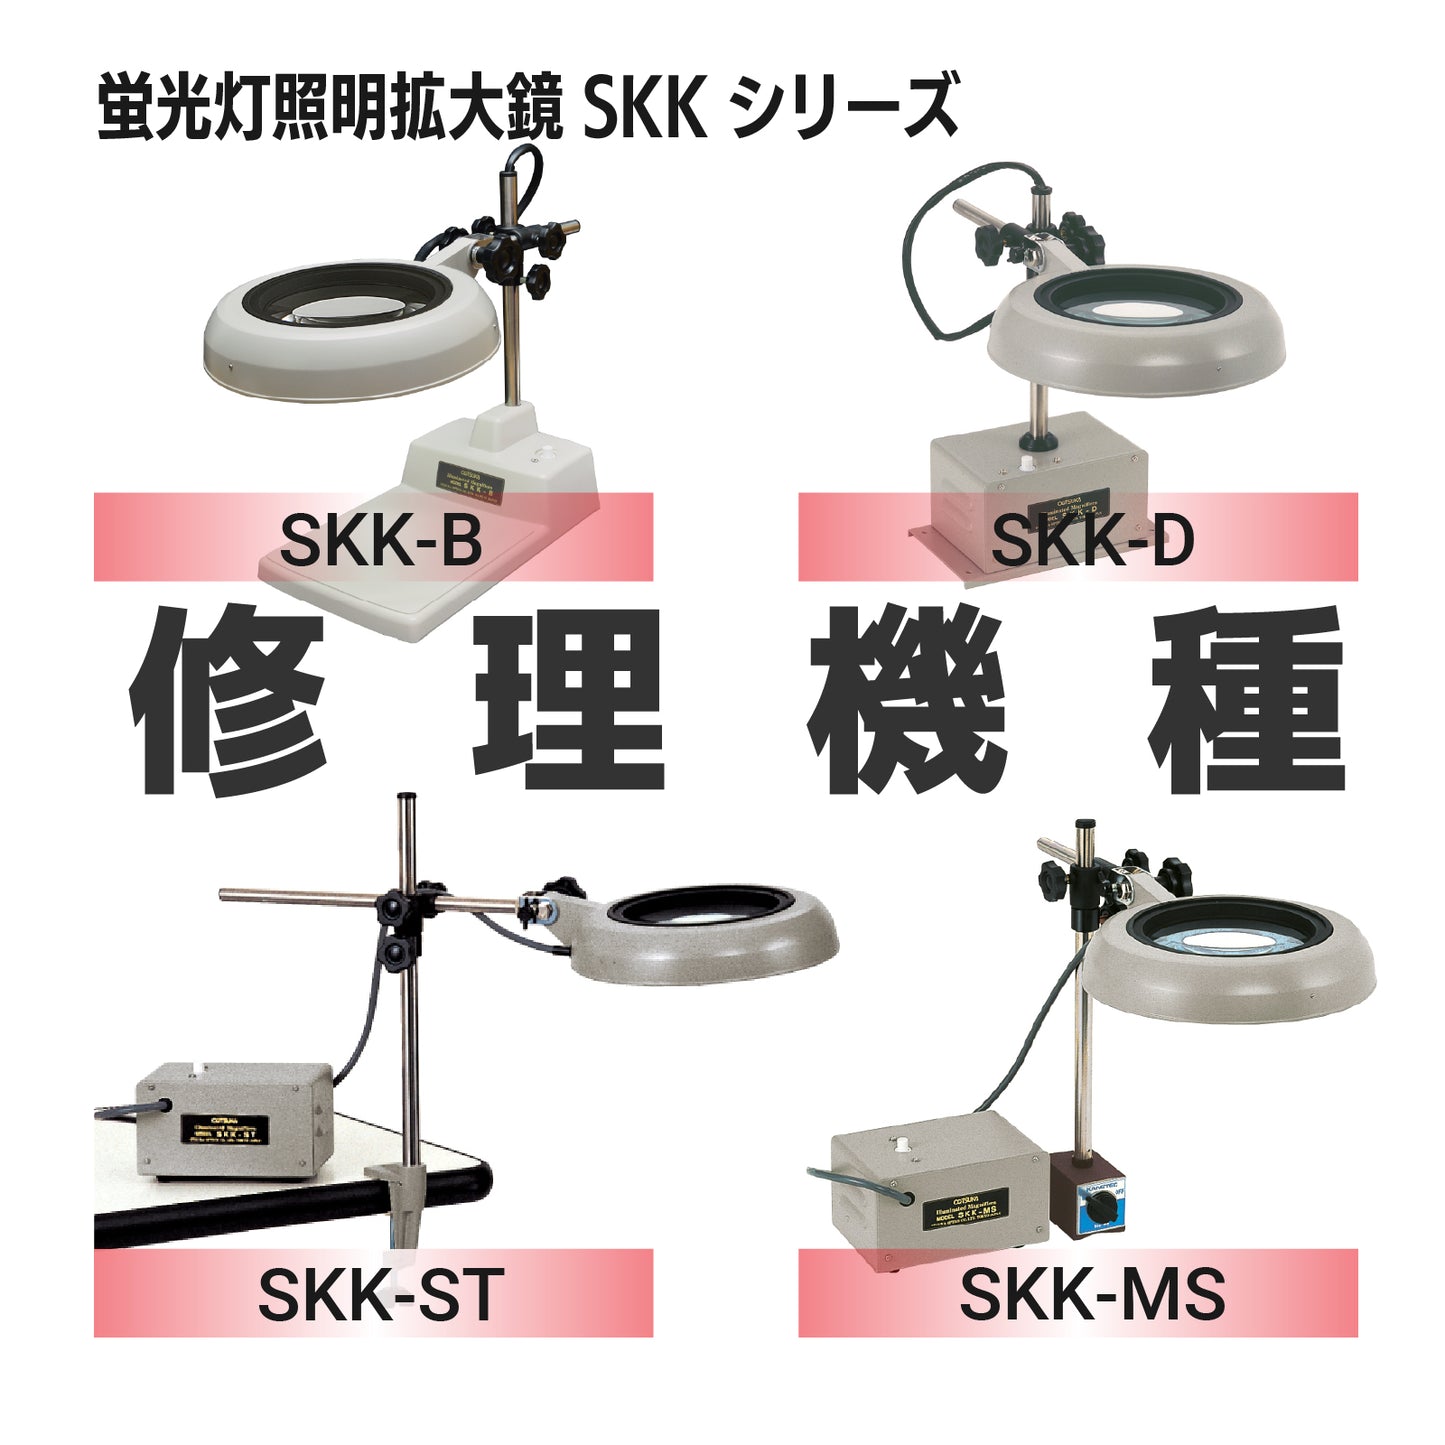 SKKシリーズ：SKK-B、D、ST、MS 各型